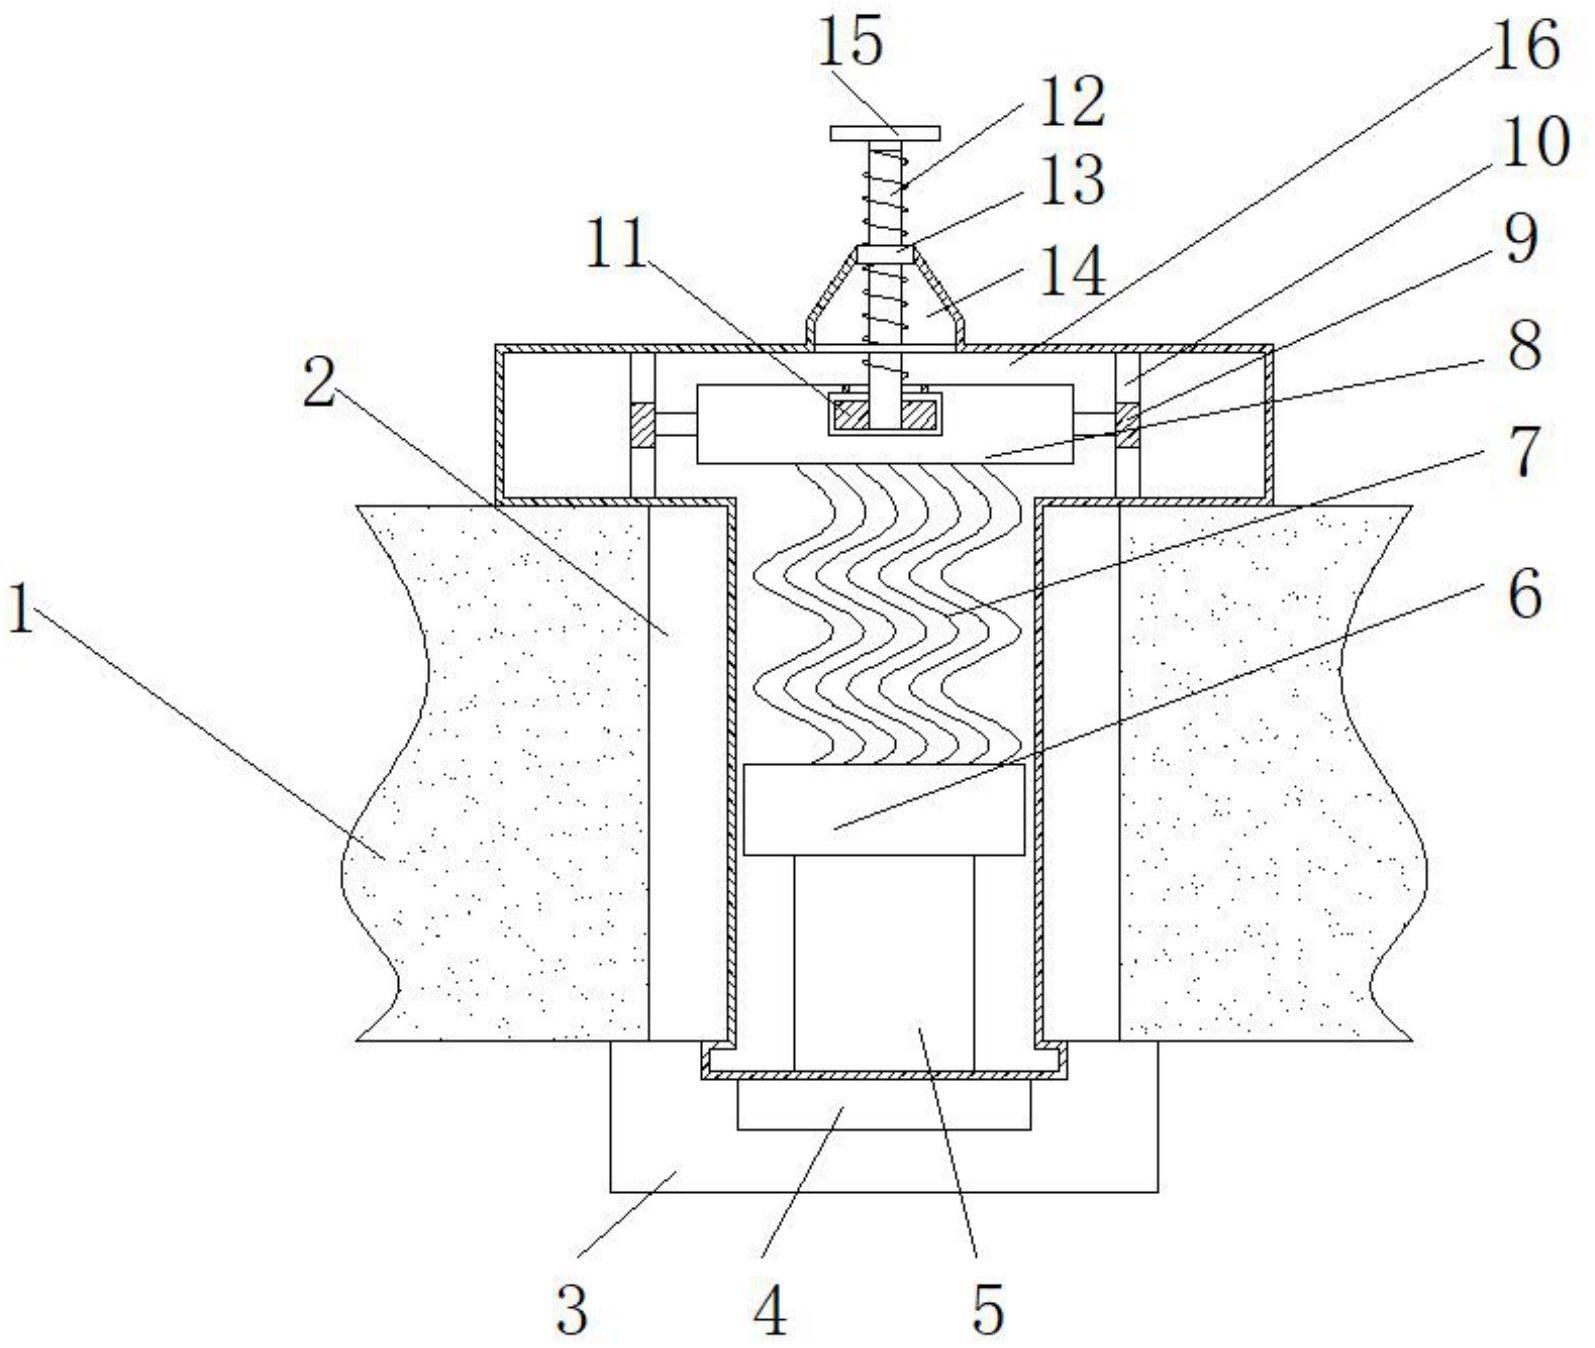 一种可换式锚碇预应力锚固装置专利图